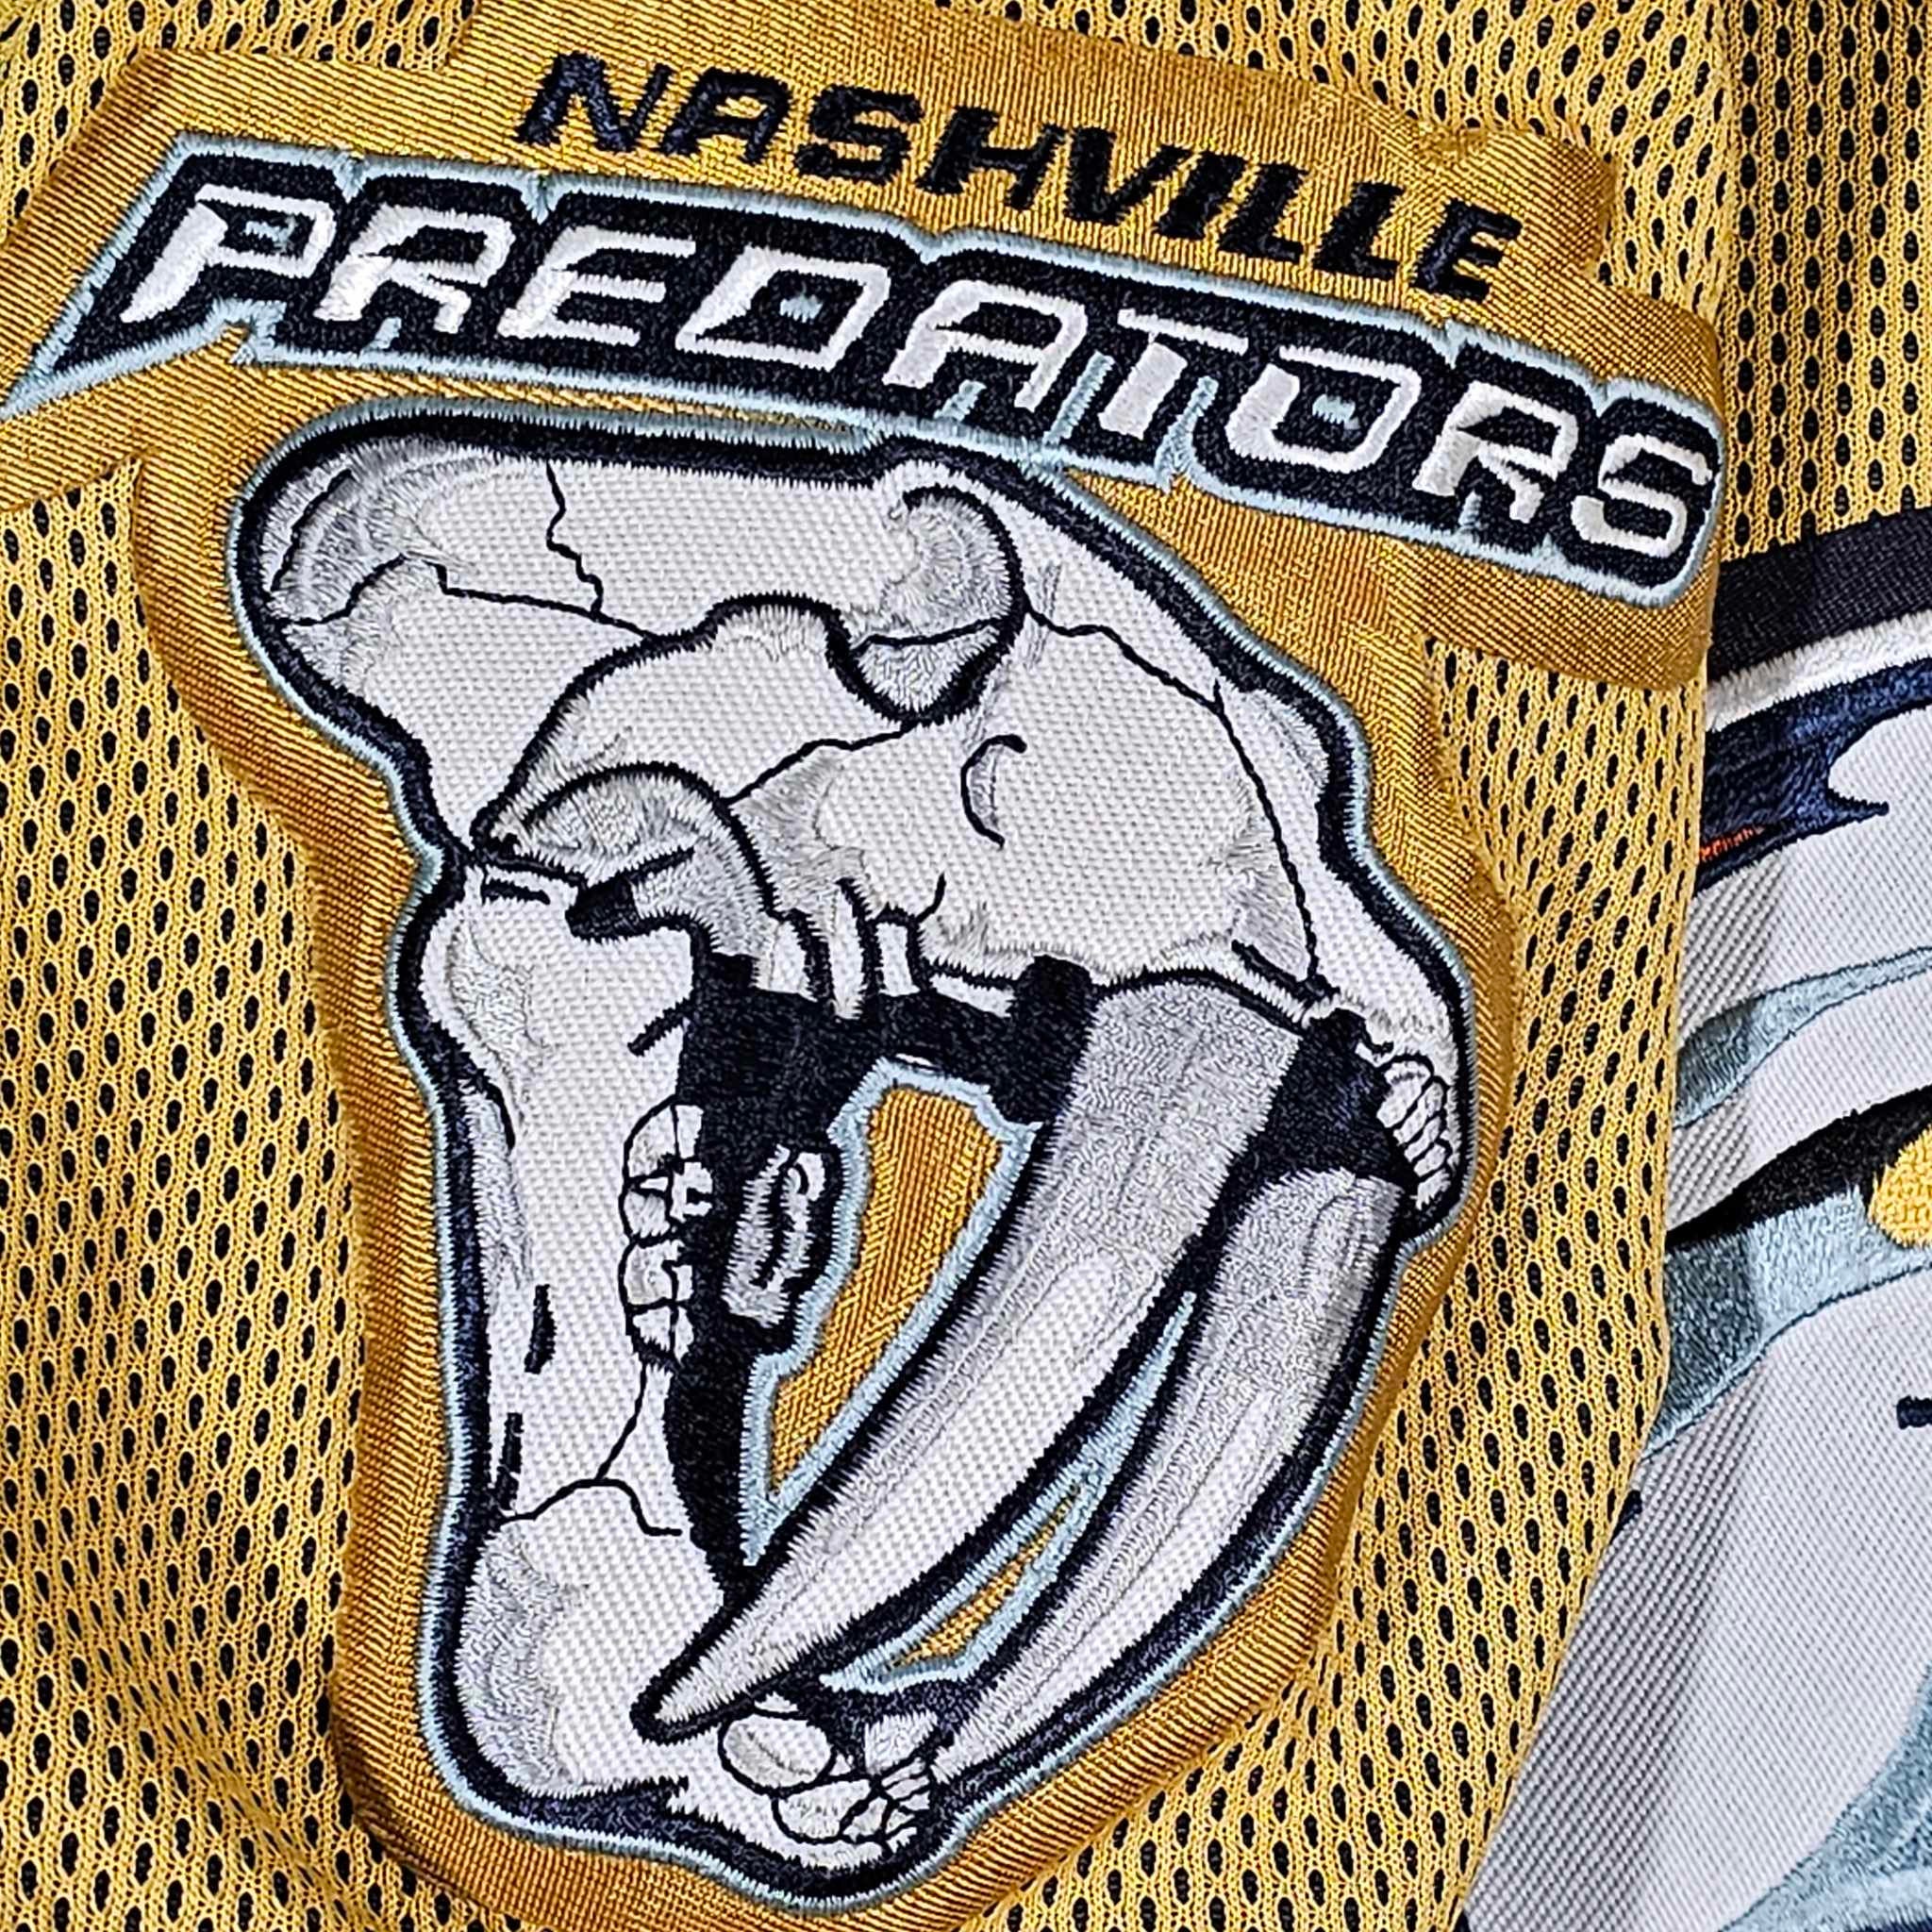 Nashville Predators Jerseys and Logos